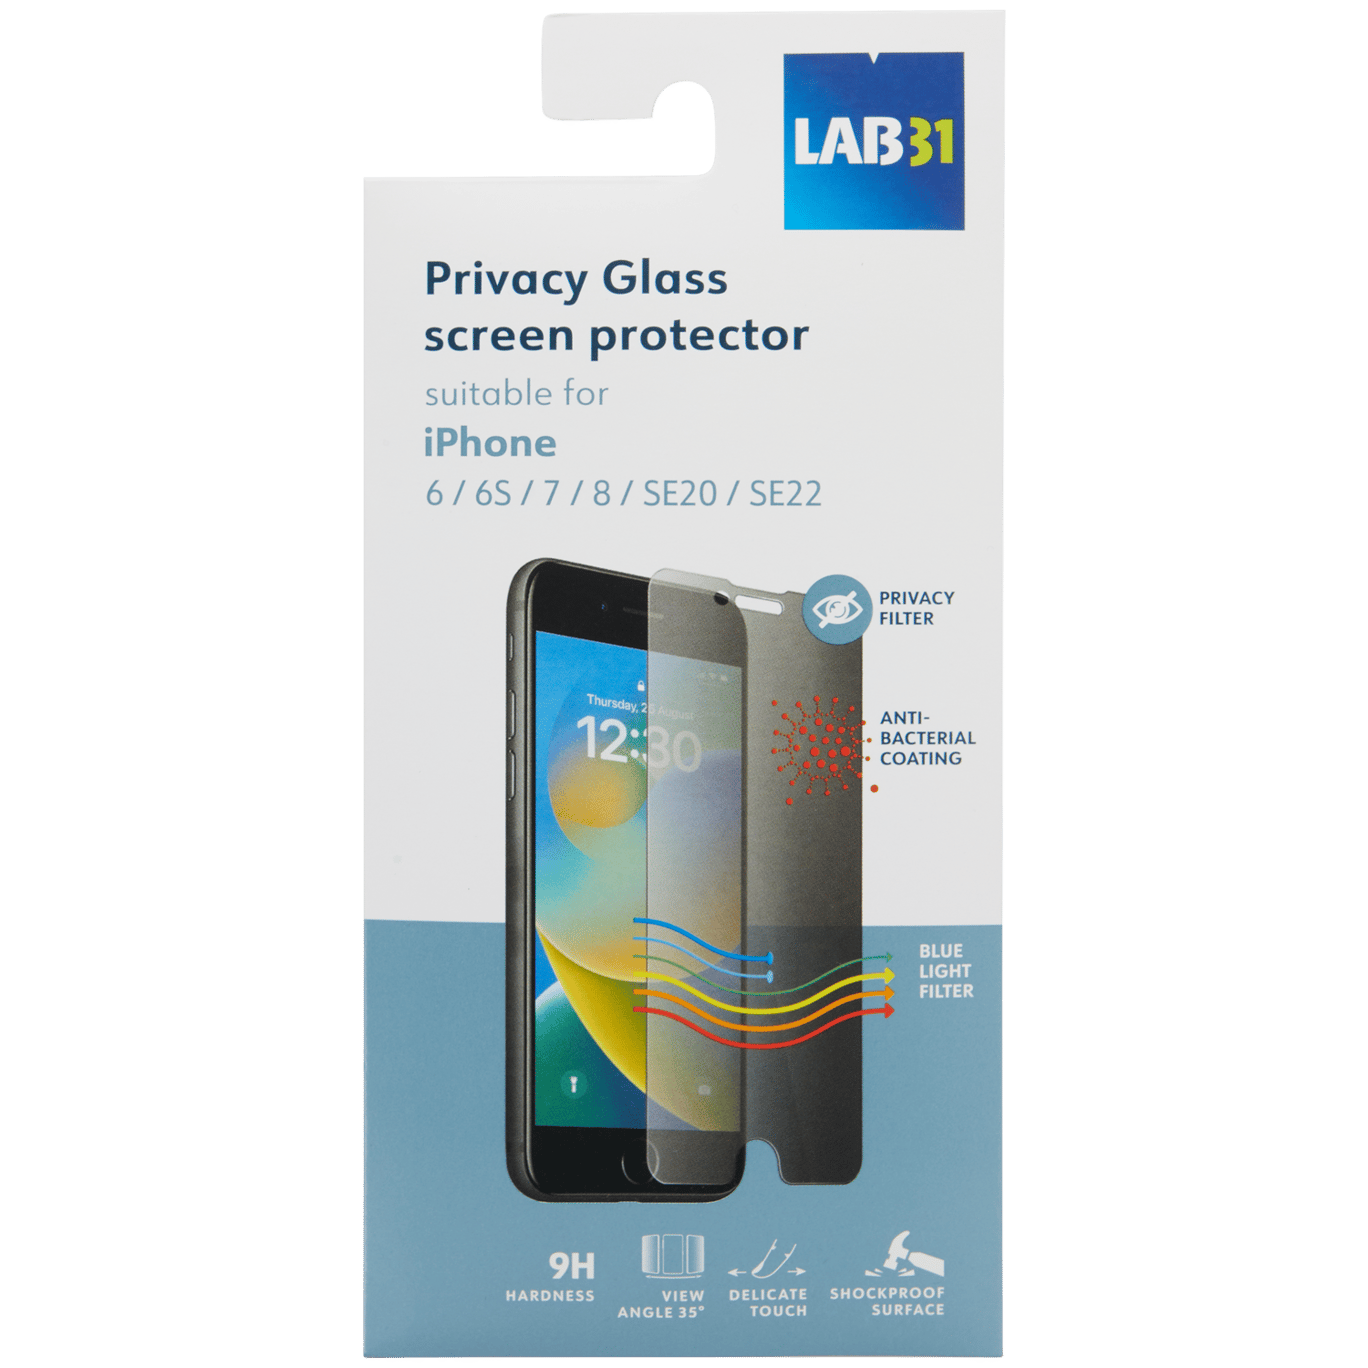 Protector de pantalla con filtro de privacidad Lab31